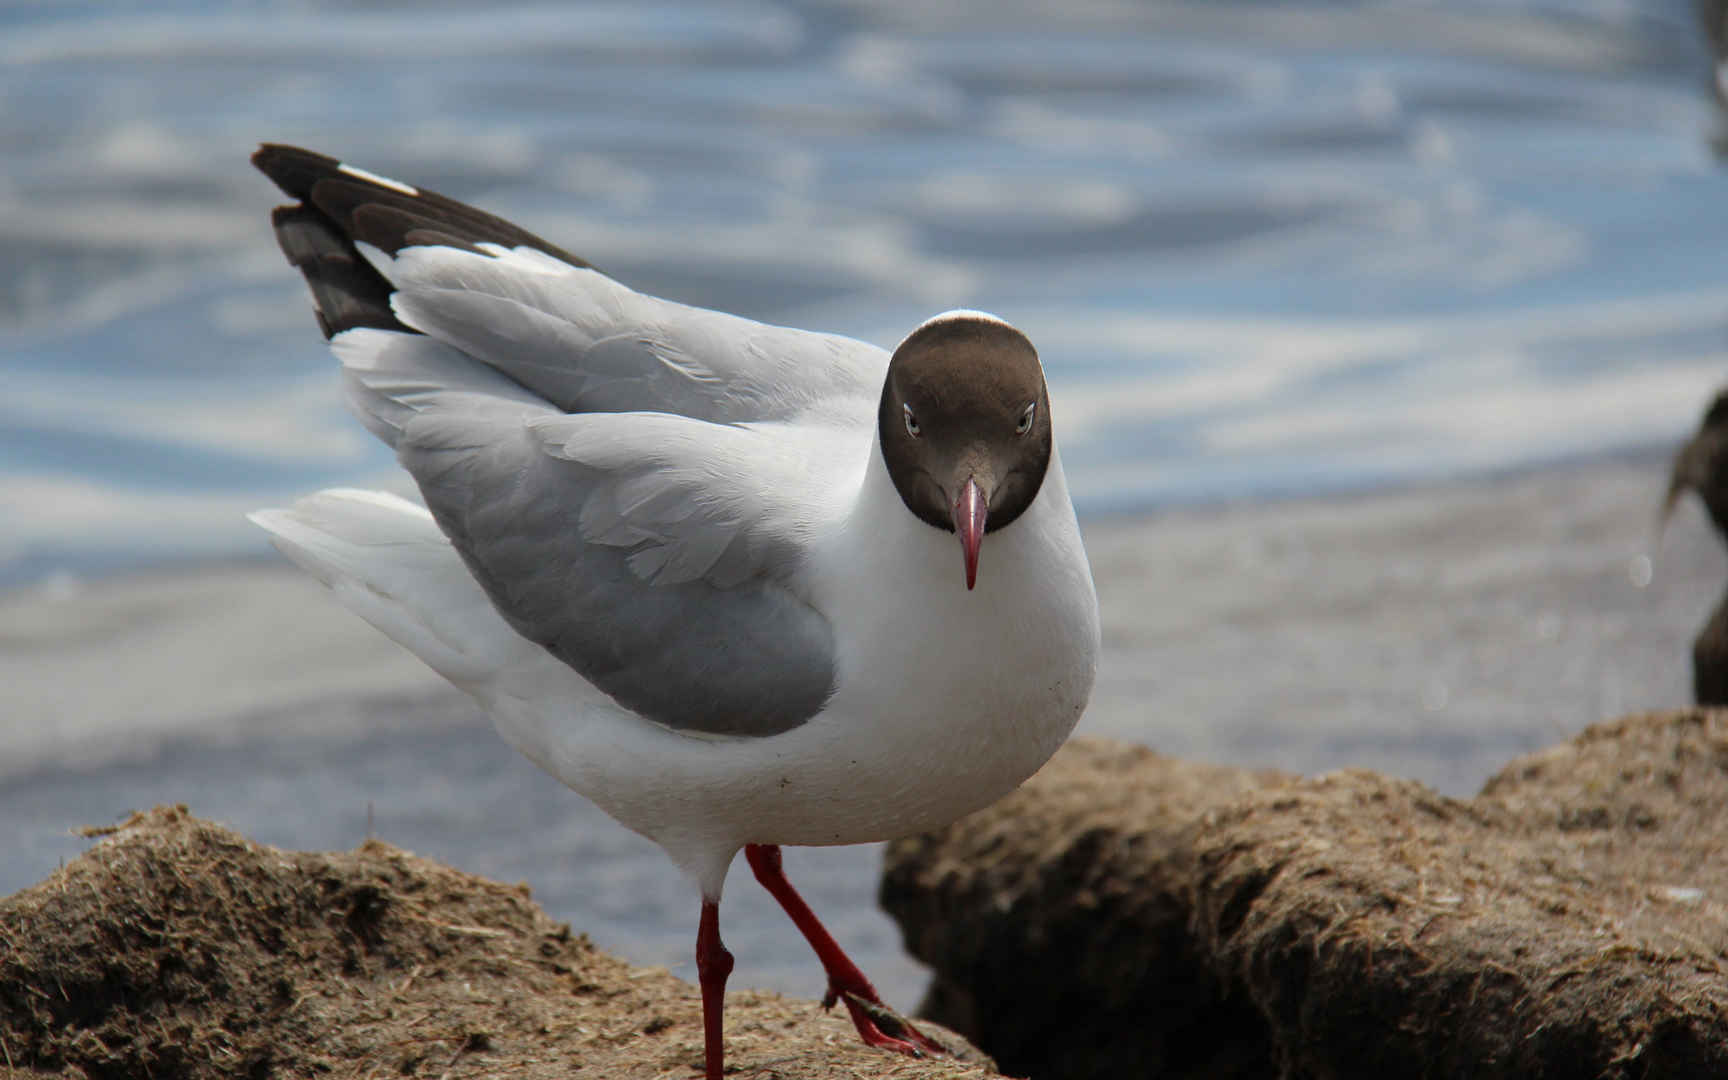 带你认识海珠湿地常见鸟类~ - 自然游憩